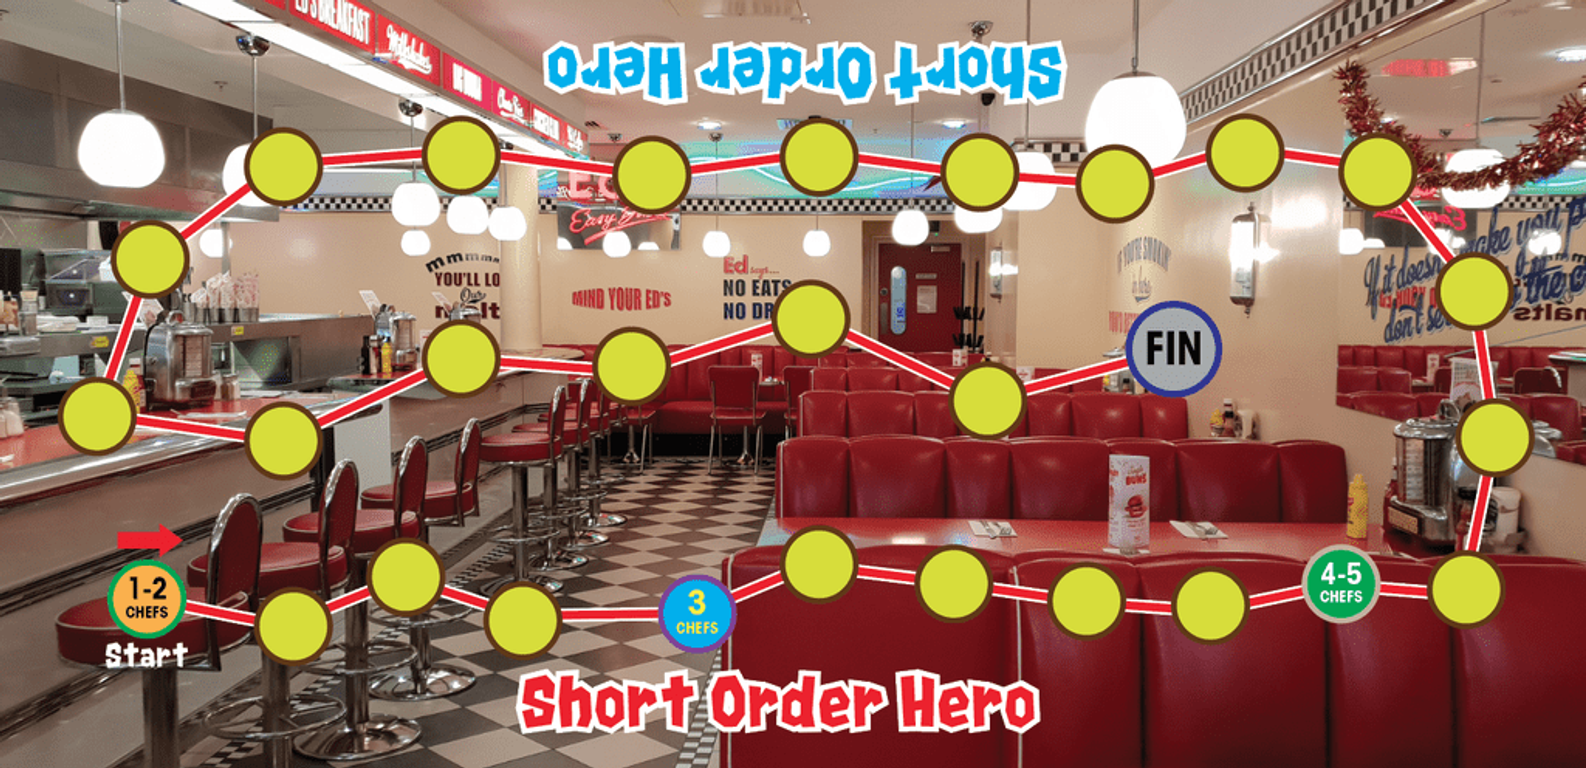 Short Order Hero game board